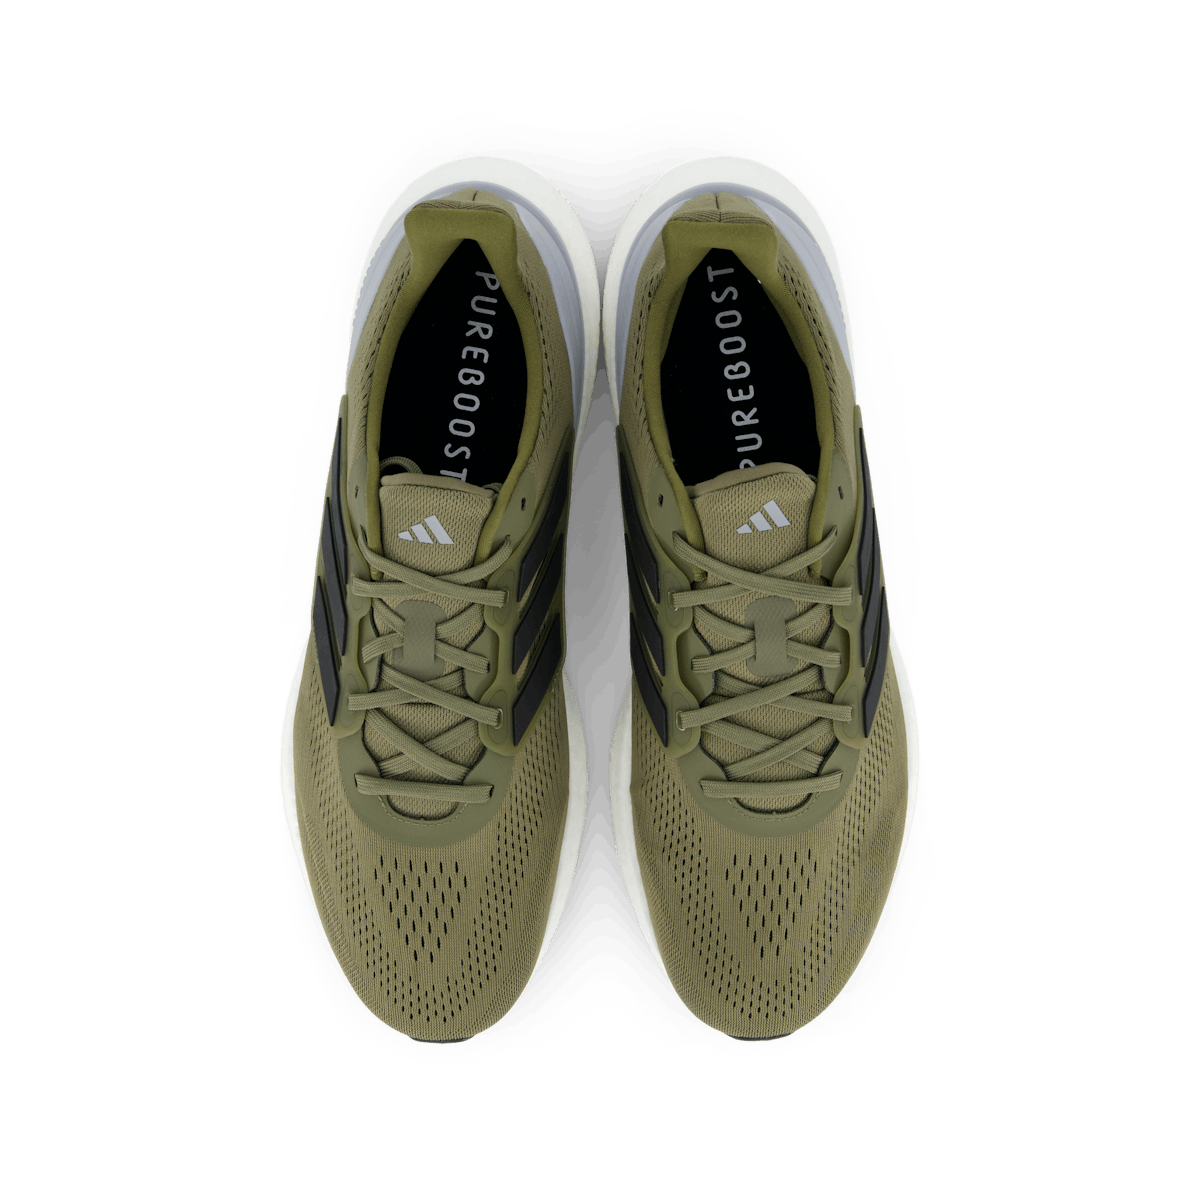 Pureboost 23 Shoes Olive Strata / Core Black / Halo Silver